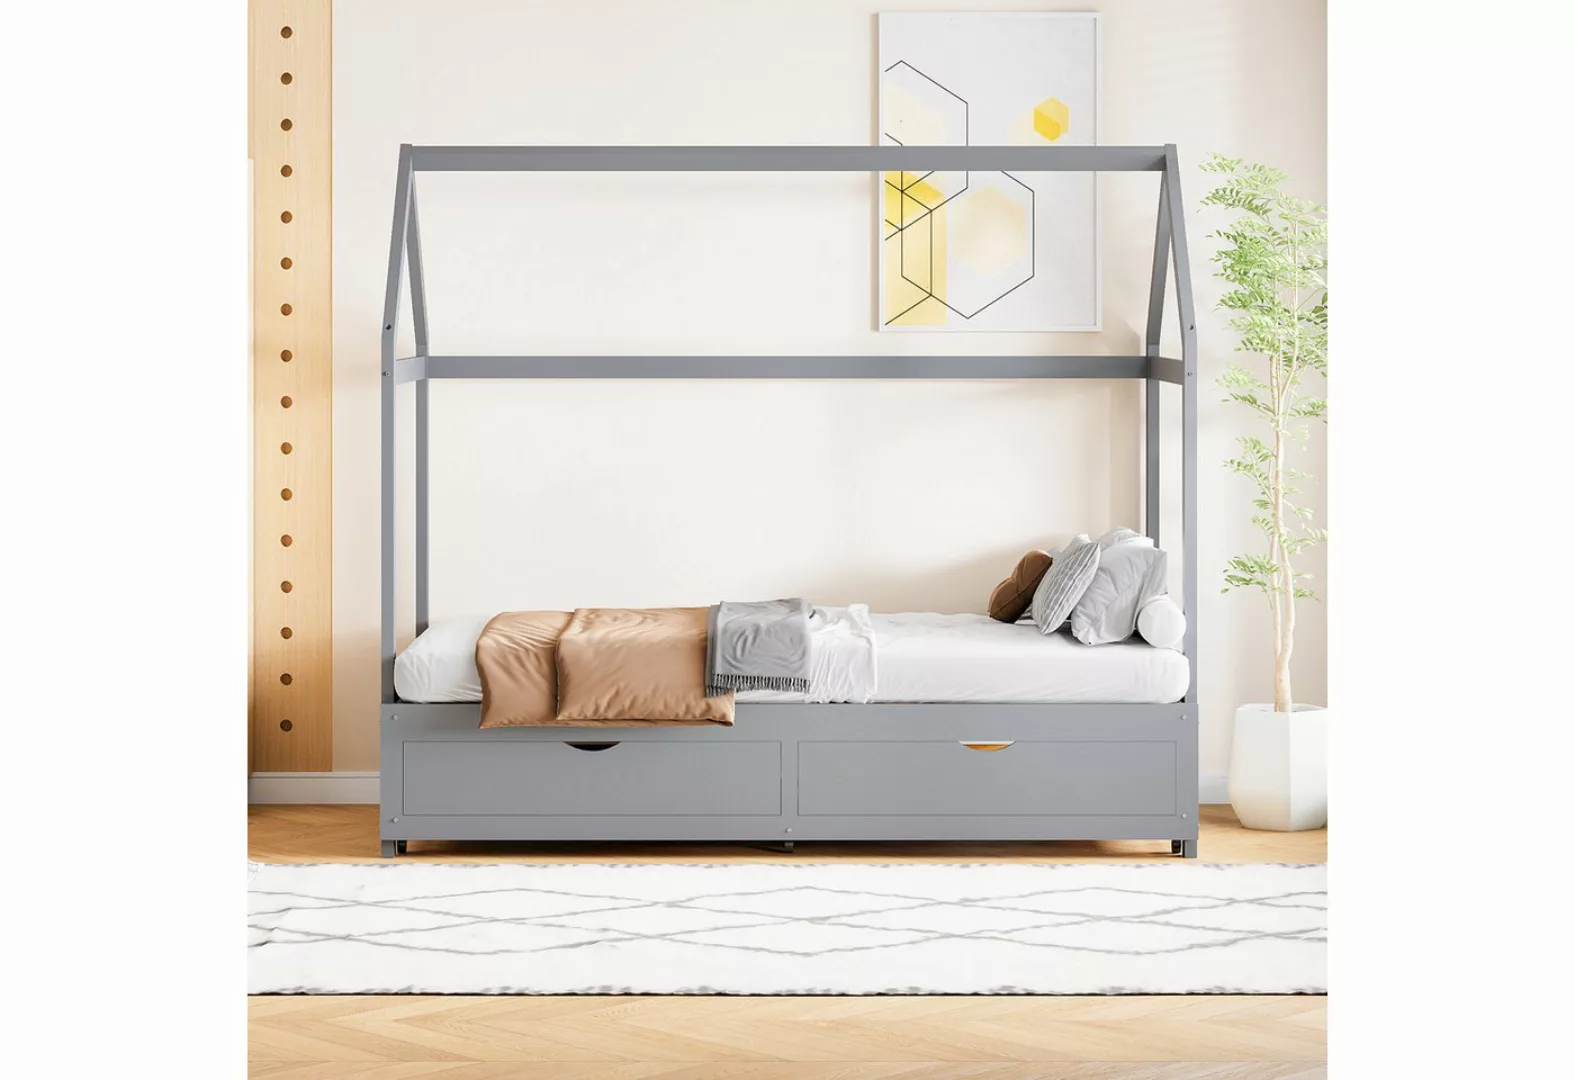 IDEASY Jugendbett Kinderbett, 90/180 x 190 cm, ausziehbar, mit 2 Schubladen günstig online kaufen